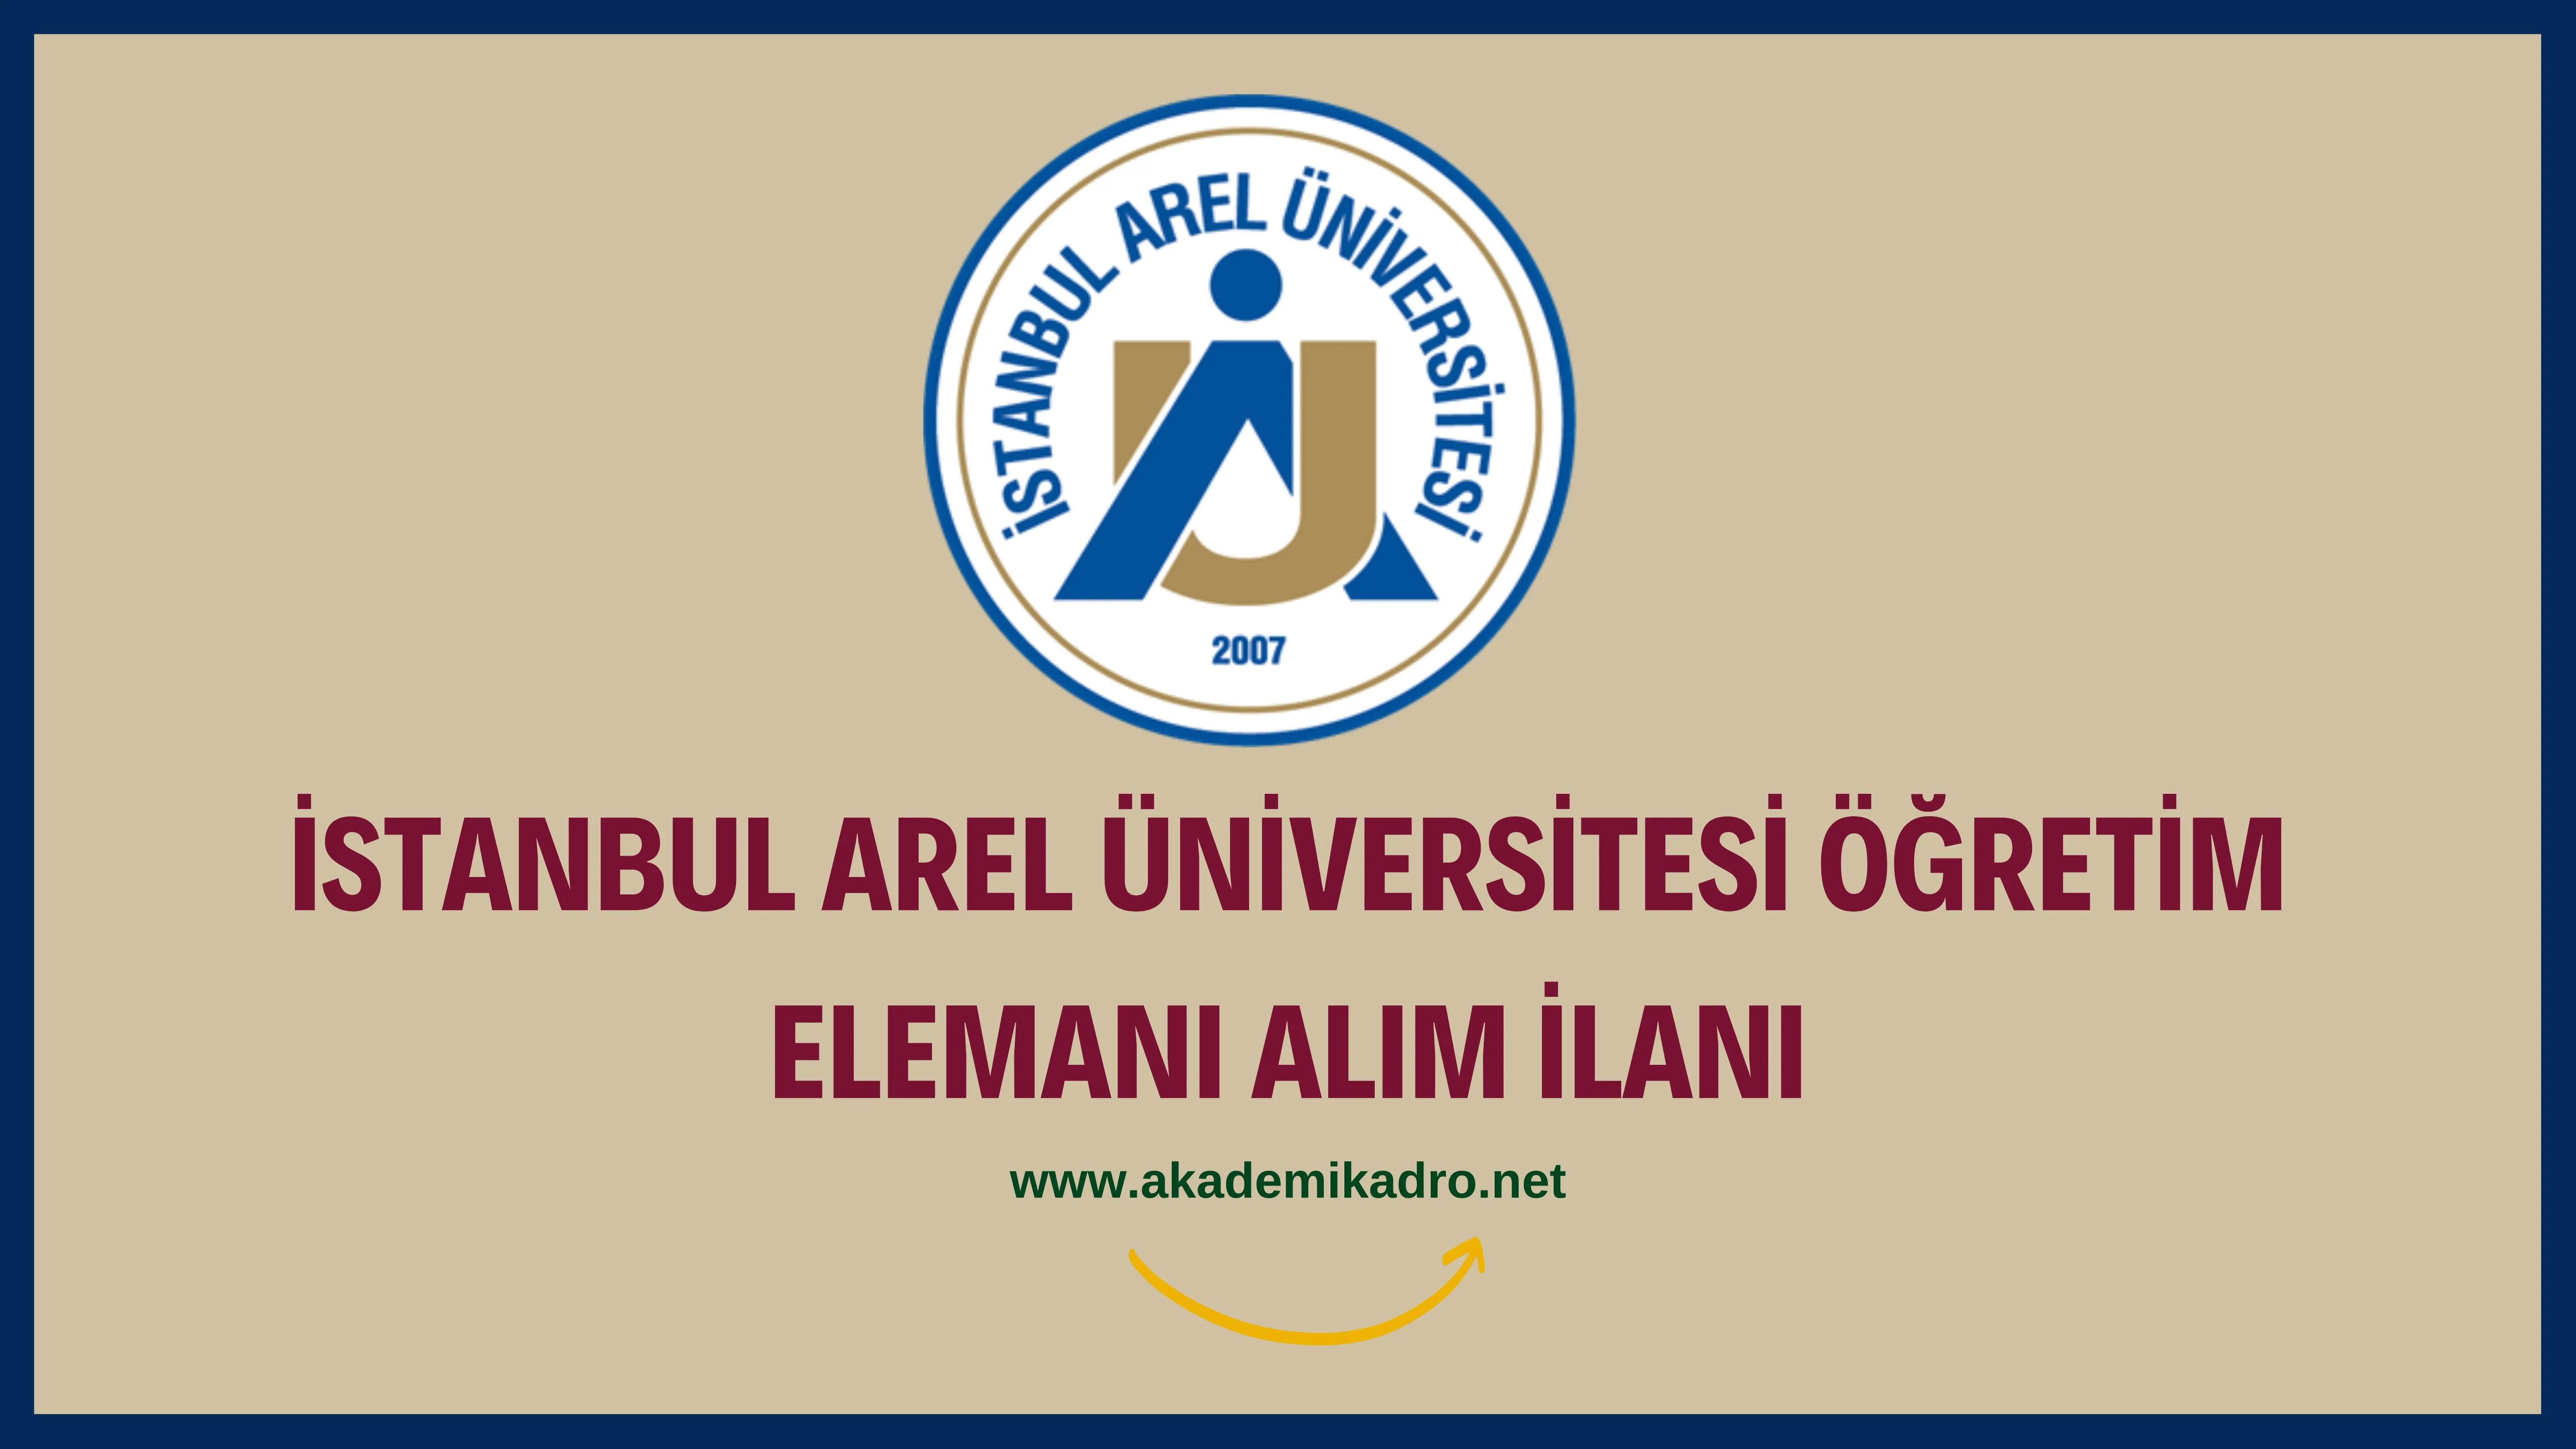 İstanbul Arel Üniversitesi 5 Araştırma görevlisi, 12 Öğretim görevlisi ve birçok alandan 58 Öğretim üyesi alacak.